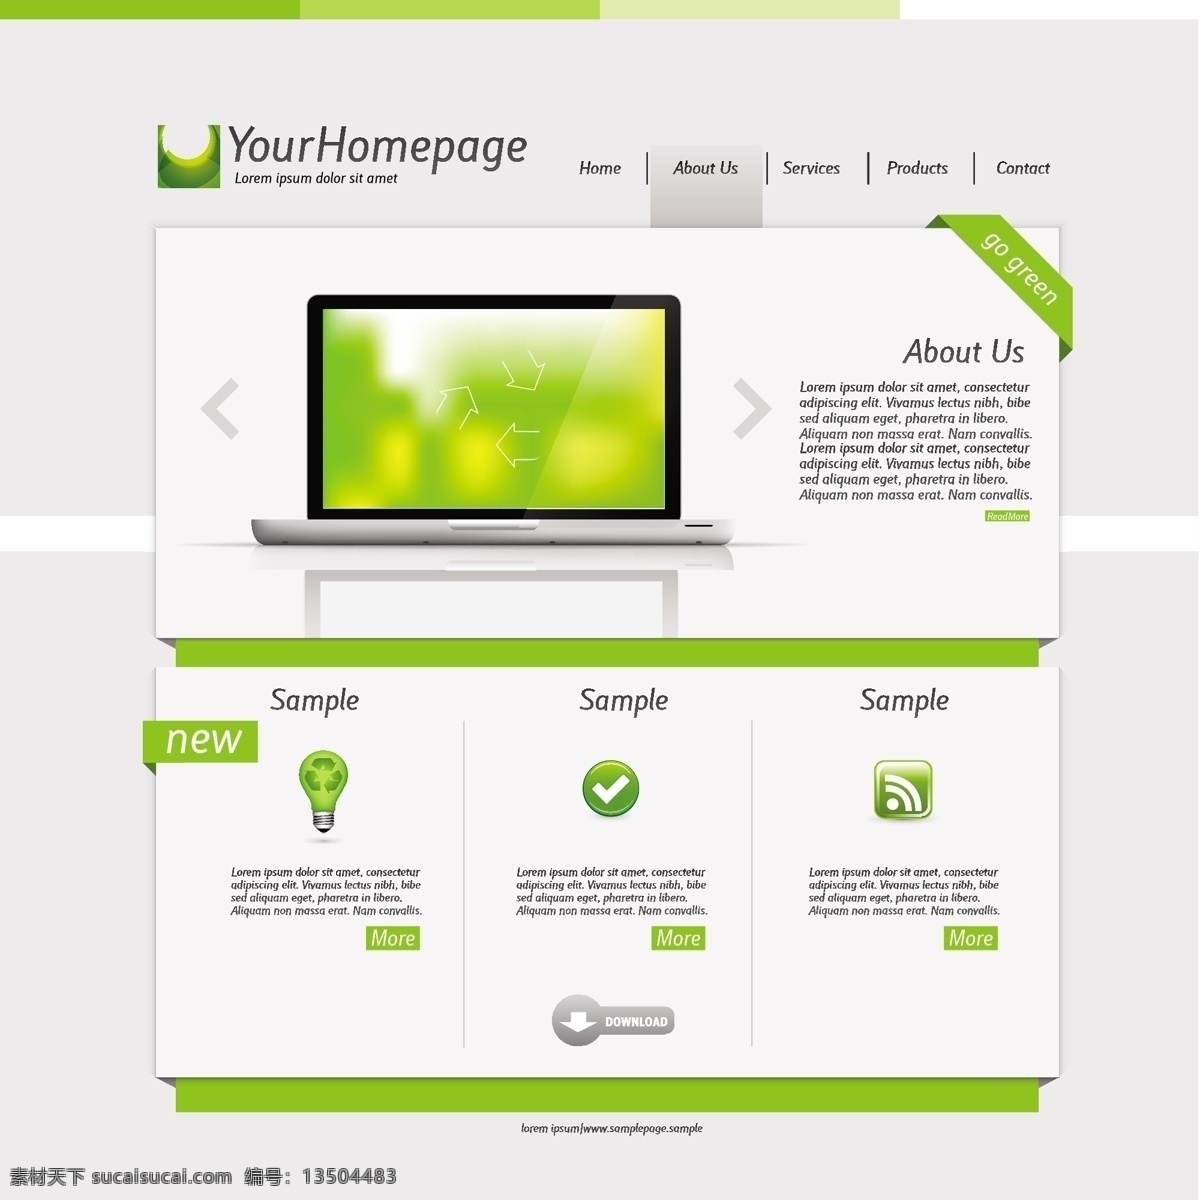 绿色环保 网站 模板 网站设计 网站模板 网站界面设计 简洁 简约时尚 网页设计 网页设计模板 环保网站 绿色清新 其他模板 矢量素材 白色